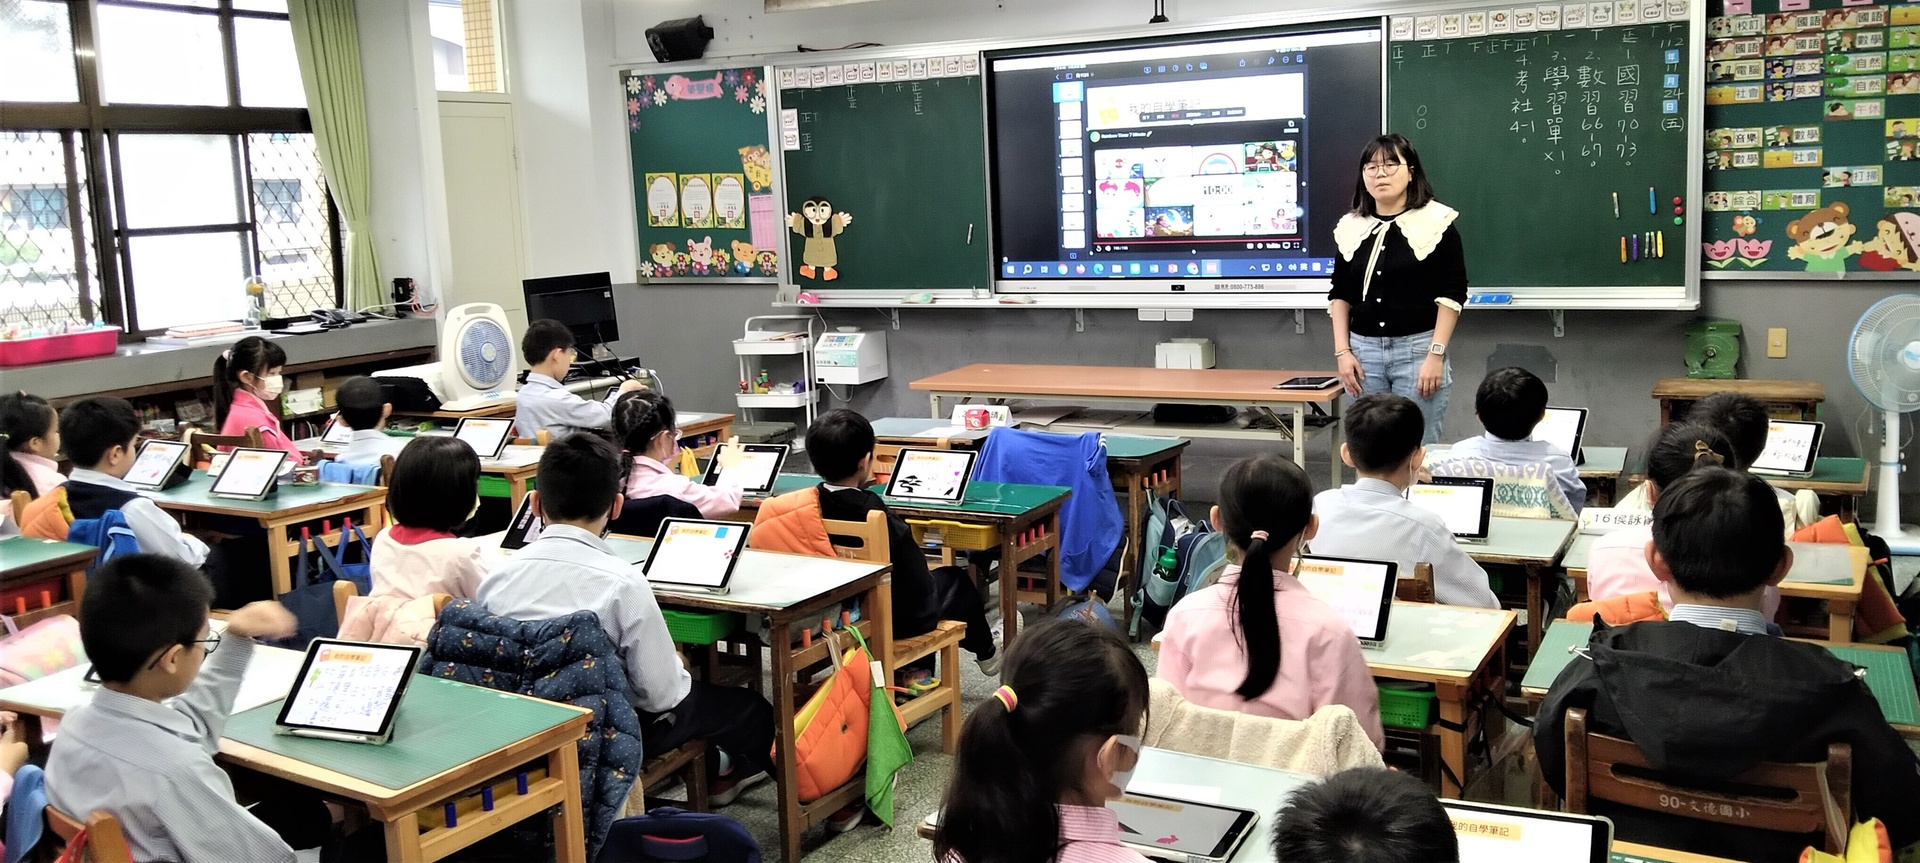 新北自主學習節文德國小分享數位課堂教學模式